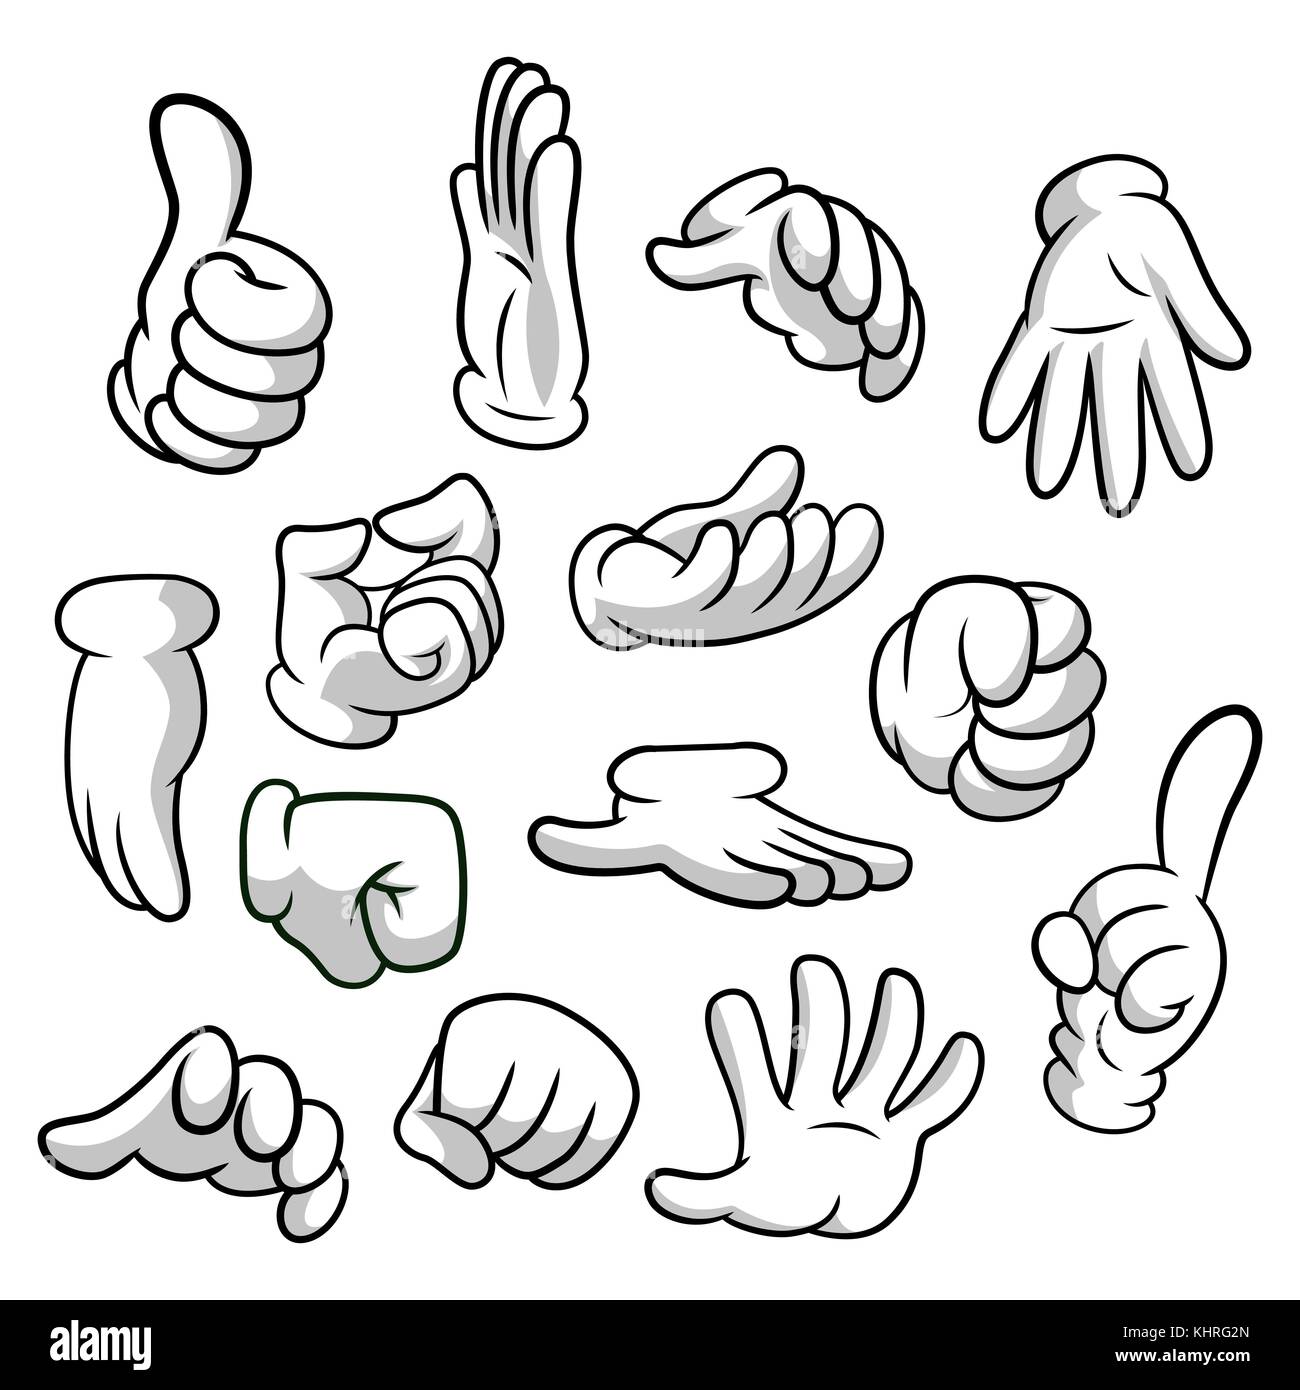 Cartoon Hände mit Handschuhen Symbol auf weißem Hintergrund eingestellt.  Vektor Clipart - Teile des Körpers, die Arme in weiße Handschuhe. Geste  Sammlung. Design Templates in Eps8 Stock-Vektorgrafik - Alamy